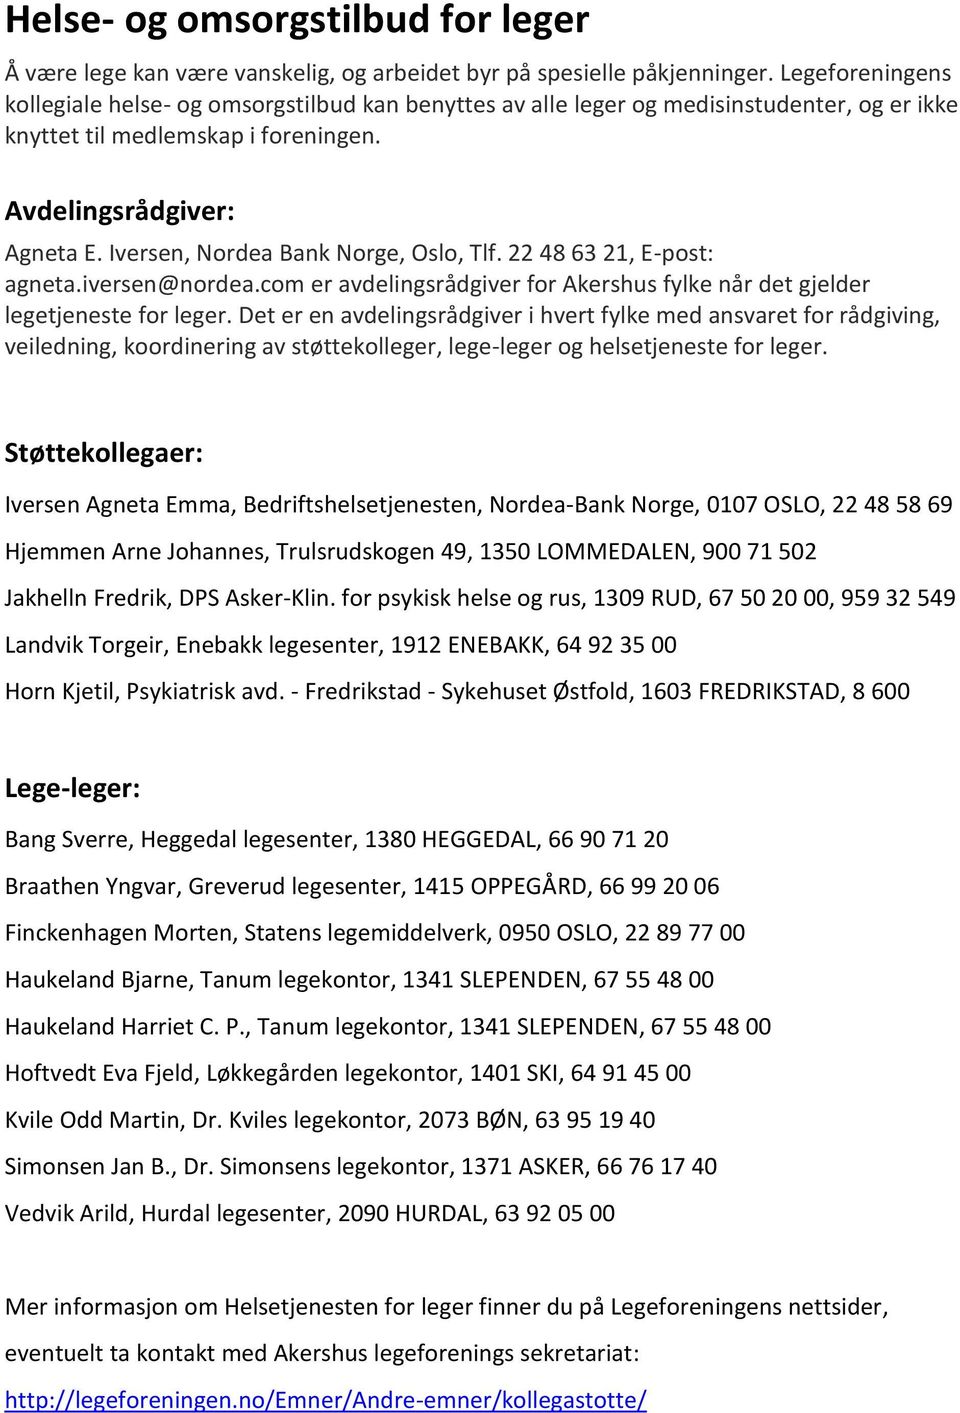 Iversen, Nordea Bank Norge, Oslo, Tlf. 22 48 63 21, E-post: agneta.iversen@nordea.com er avdelingsrådgiver for Akershus fylke når det gjelder legetjeneste for leger.